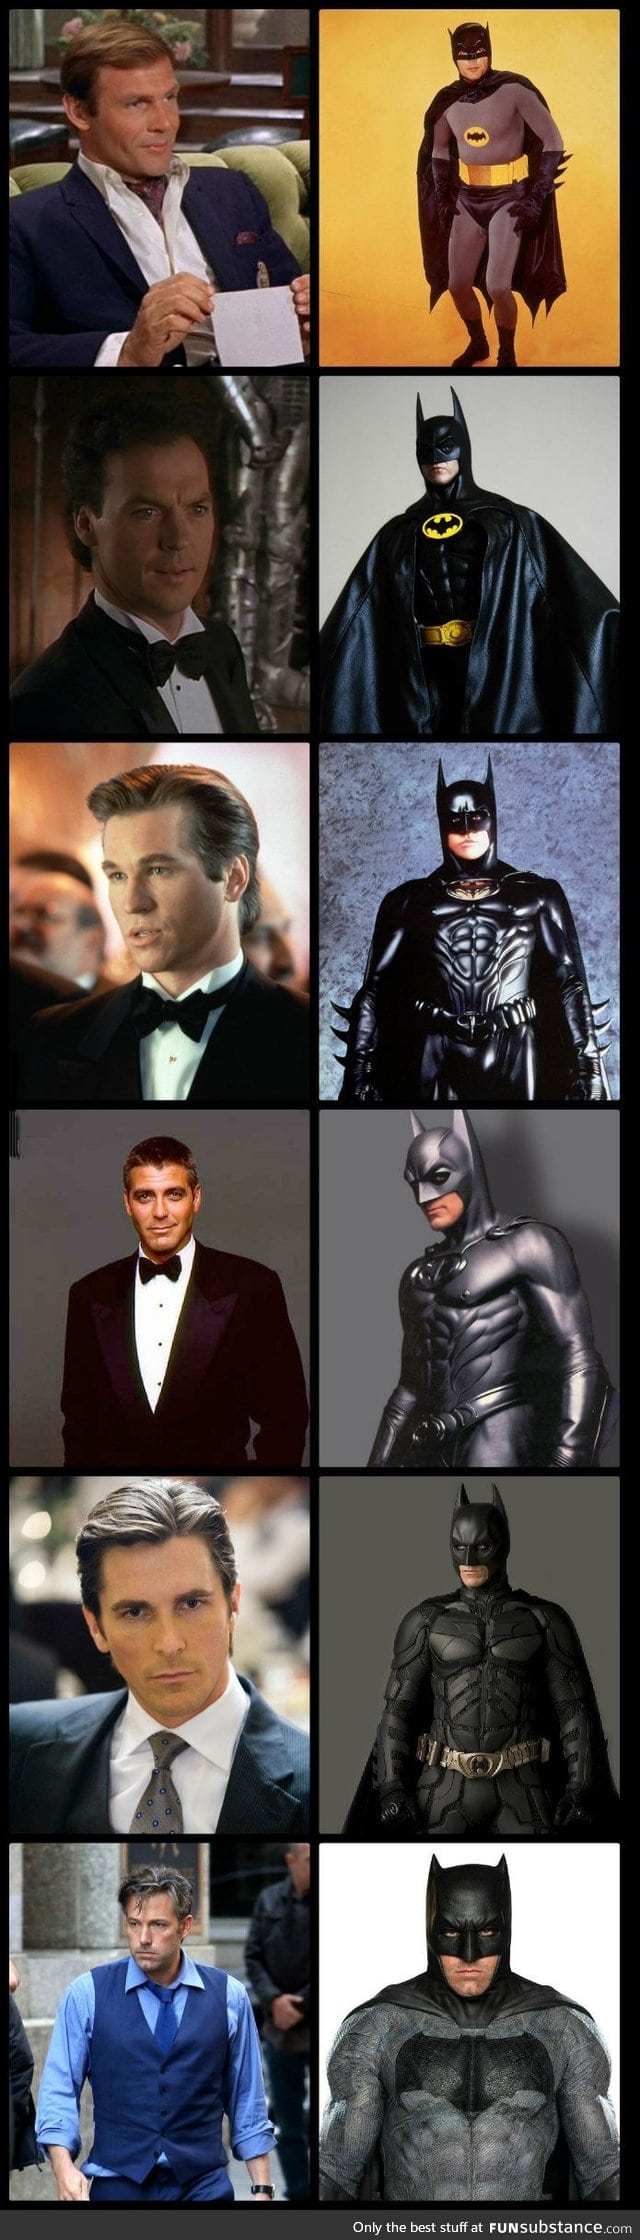 Your favorite Batsuit?